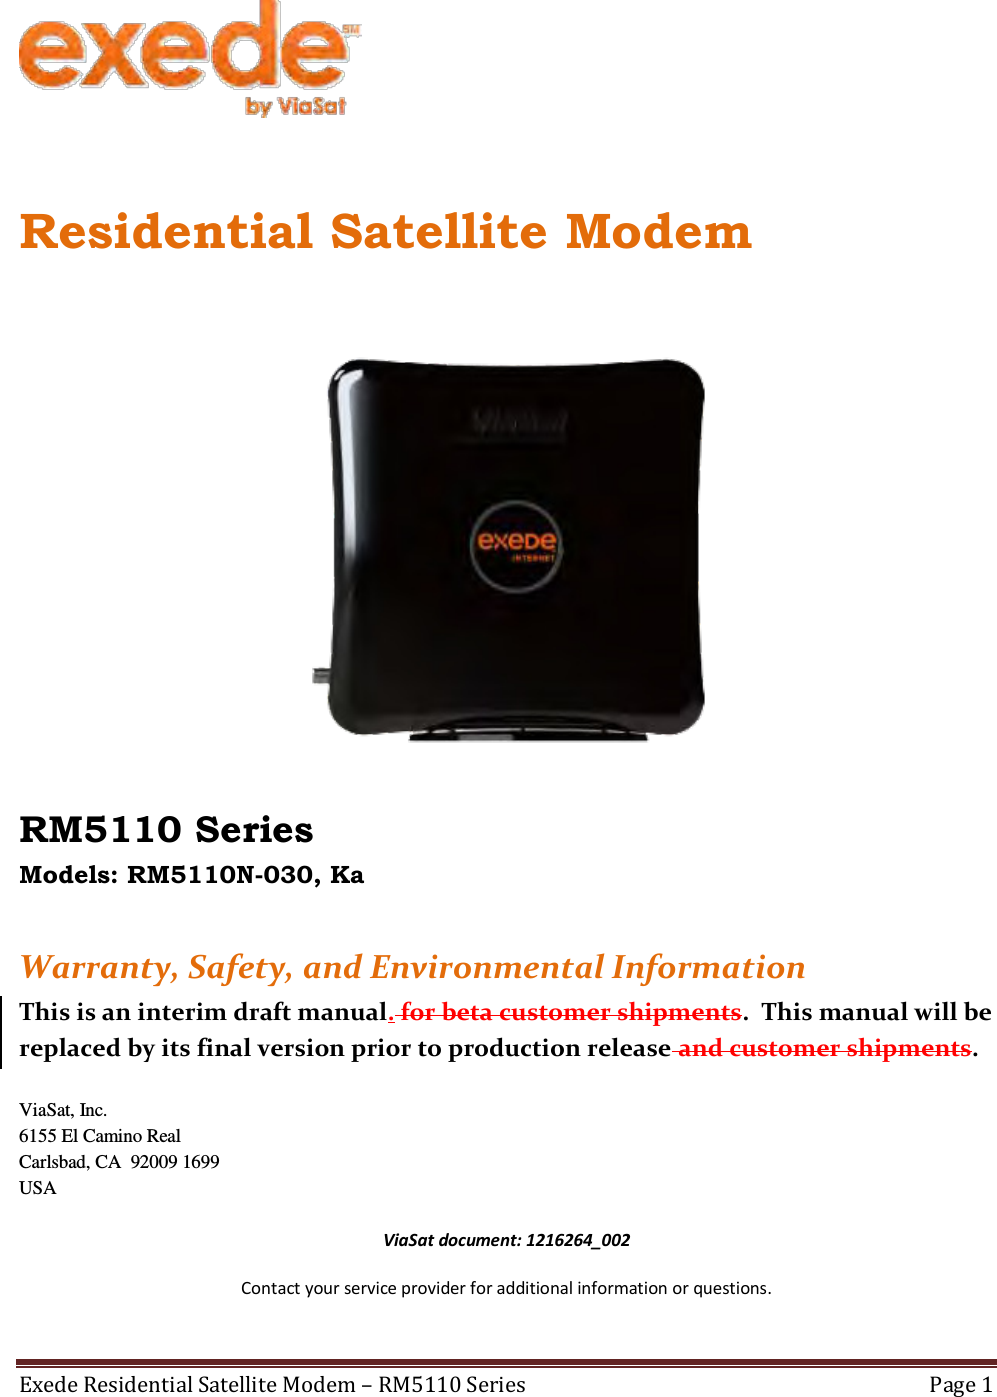 viasat surfbeam 2 satellite modem manual